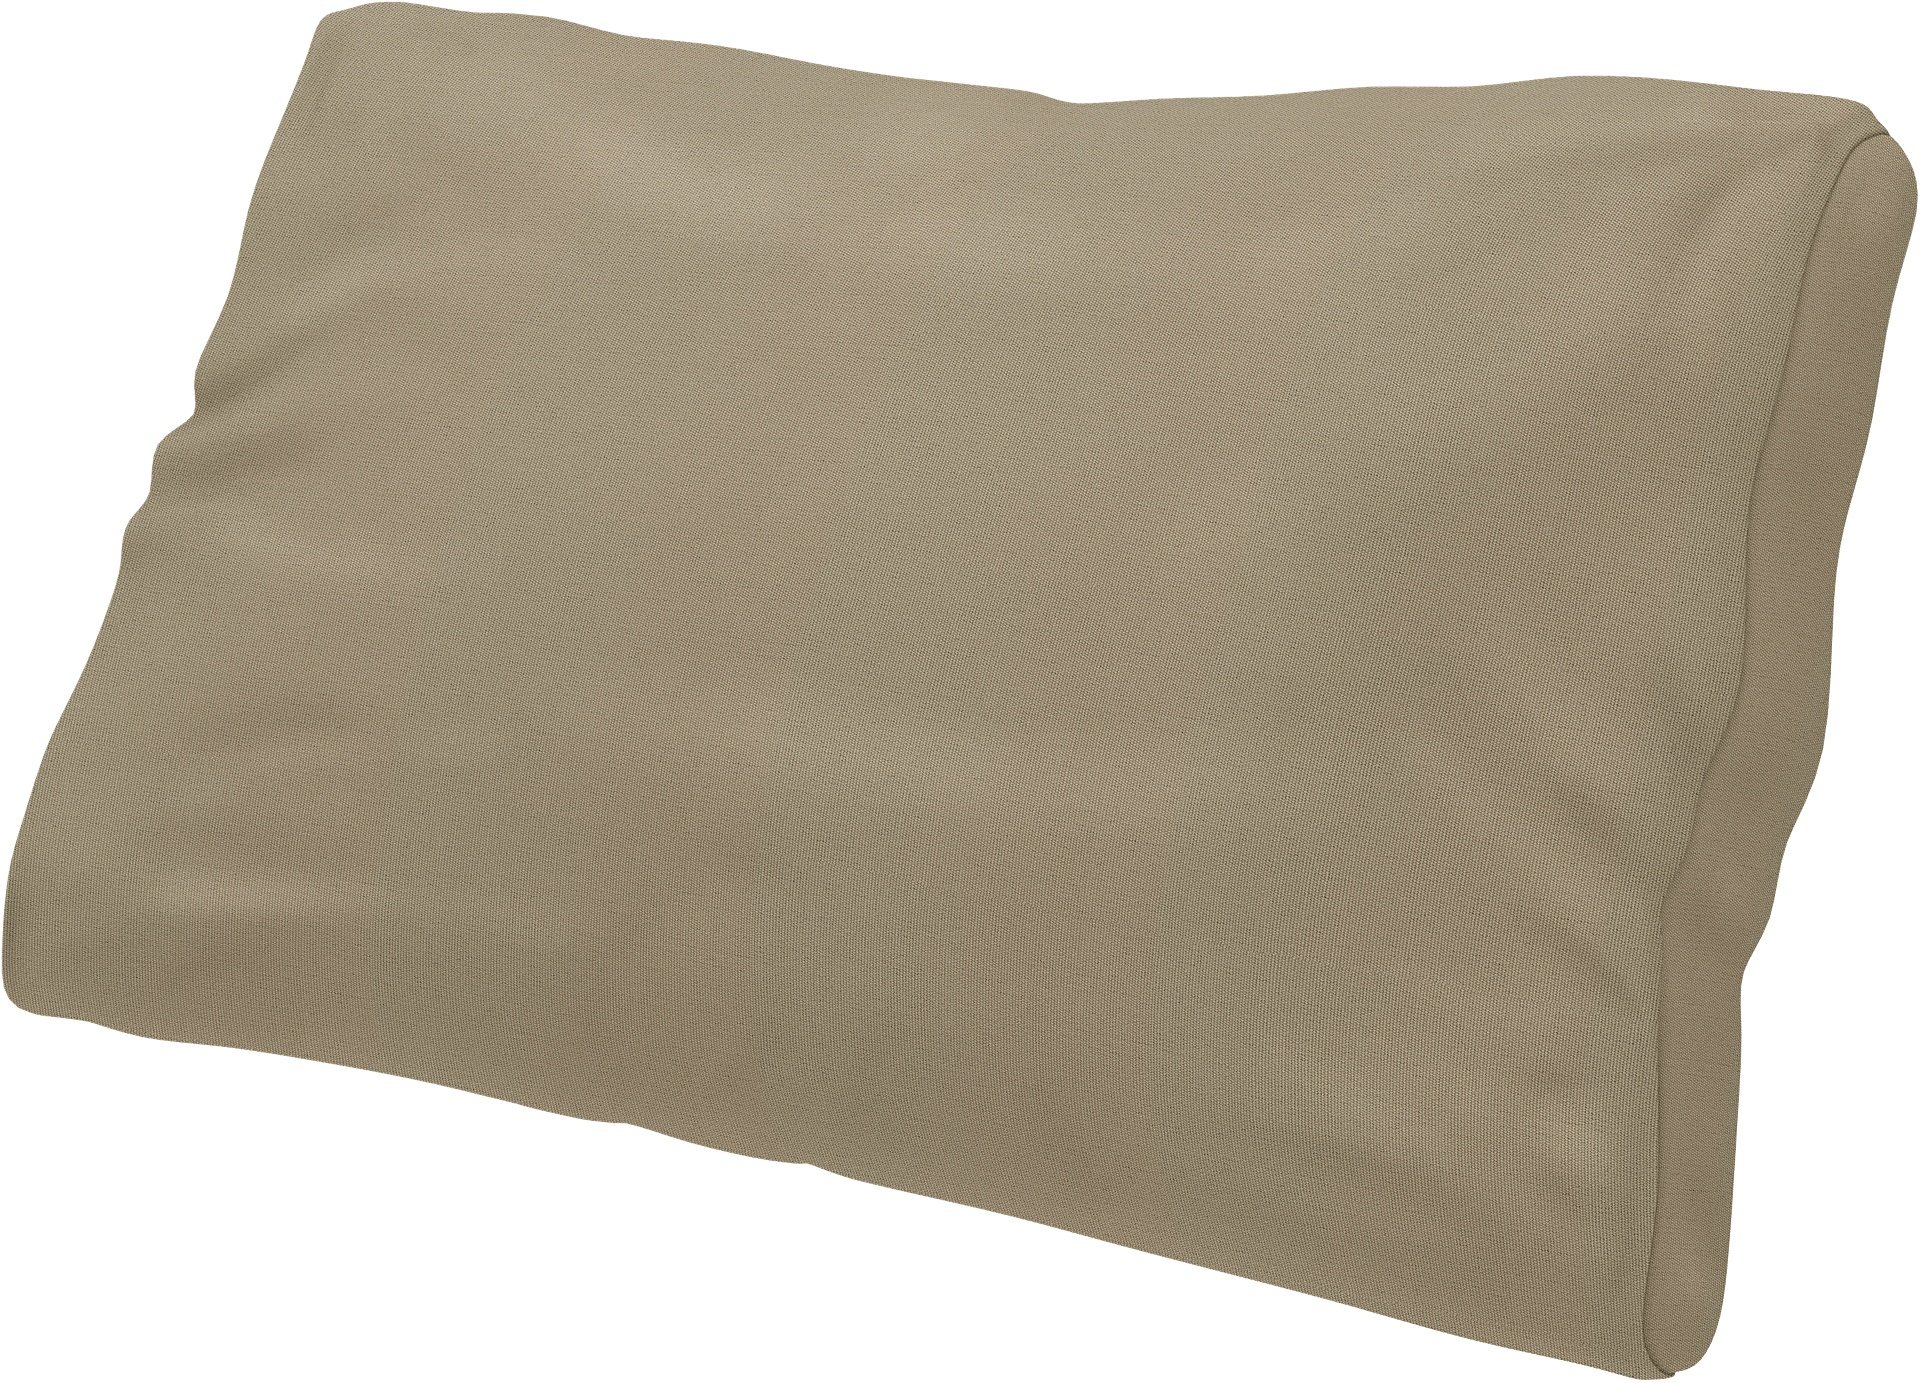 IKEA - Lumbar cushion cover Farlov, Dark Sand, Outdoor - Bemz